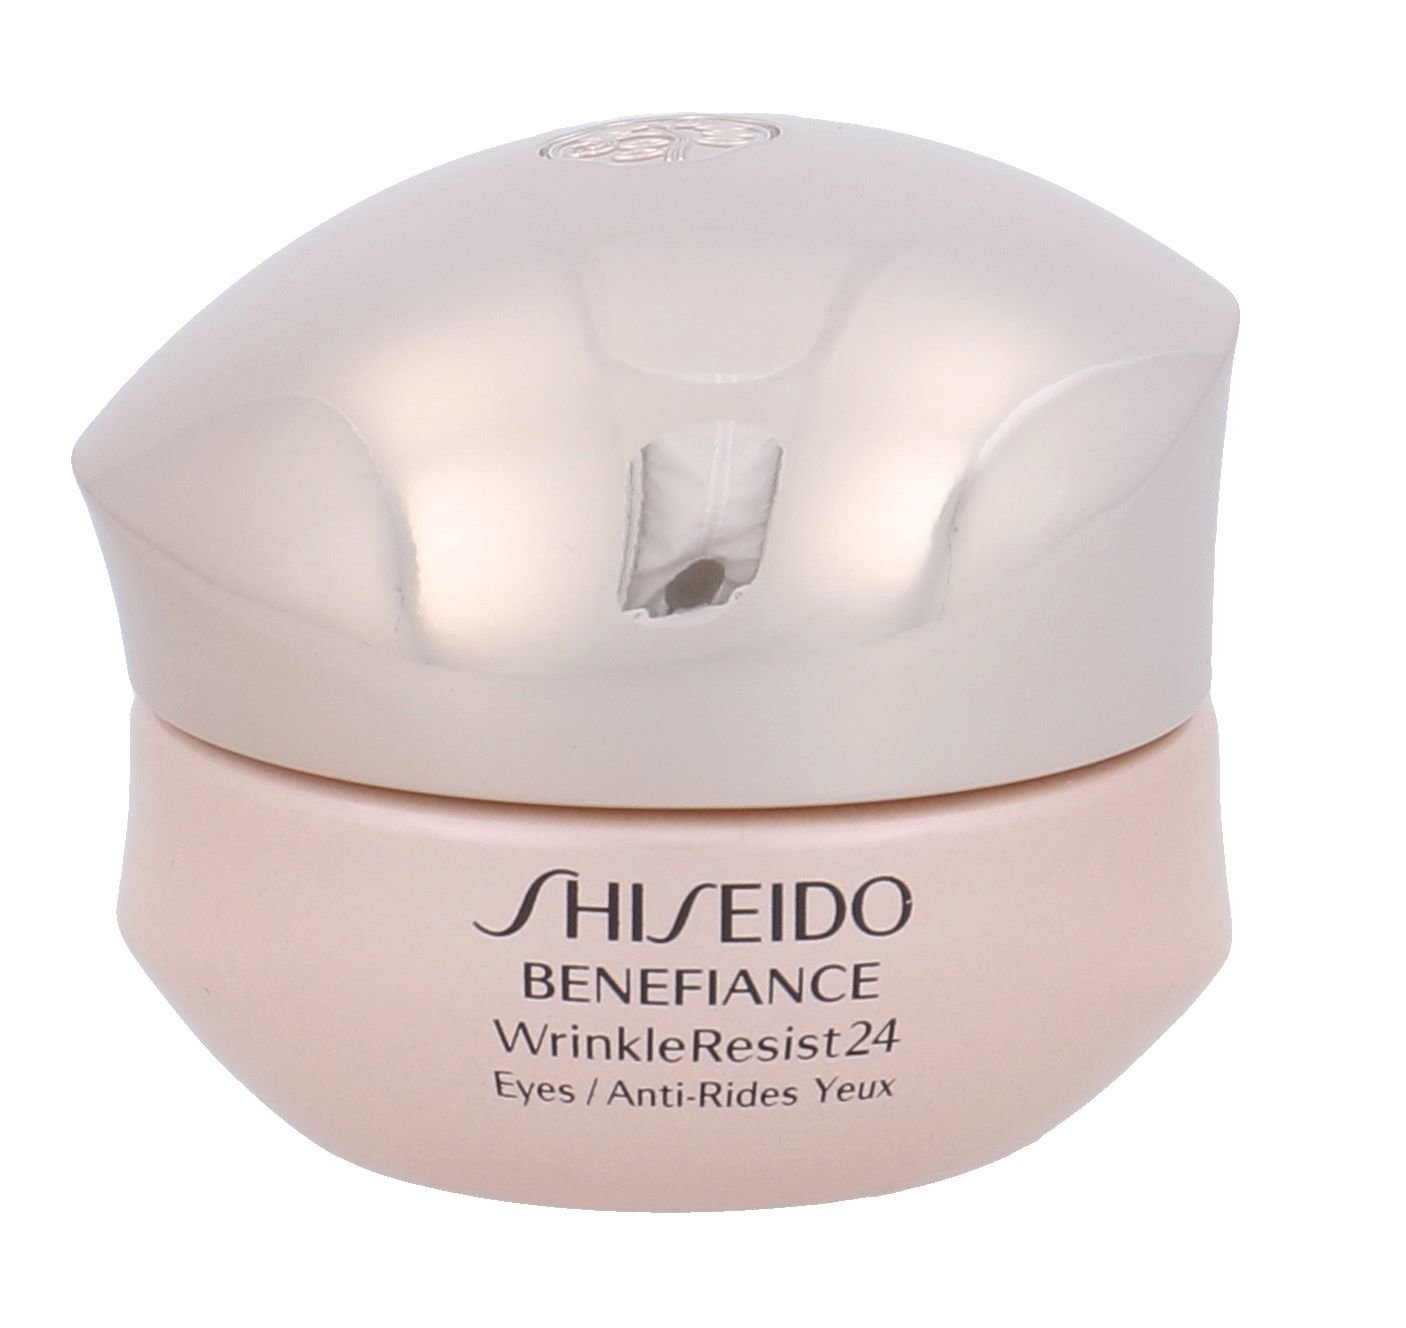 Shiseido BENEFIANCE Wrinkle Resist 24 Eye Cream